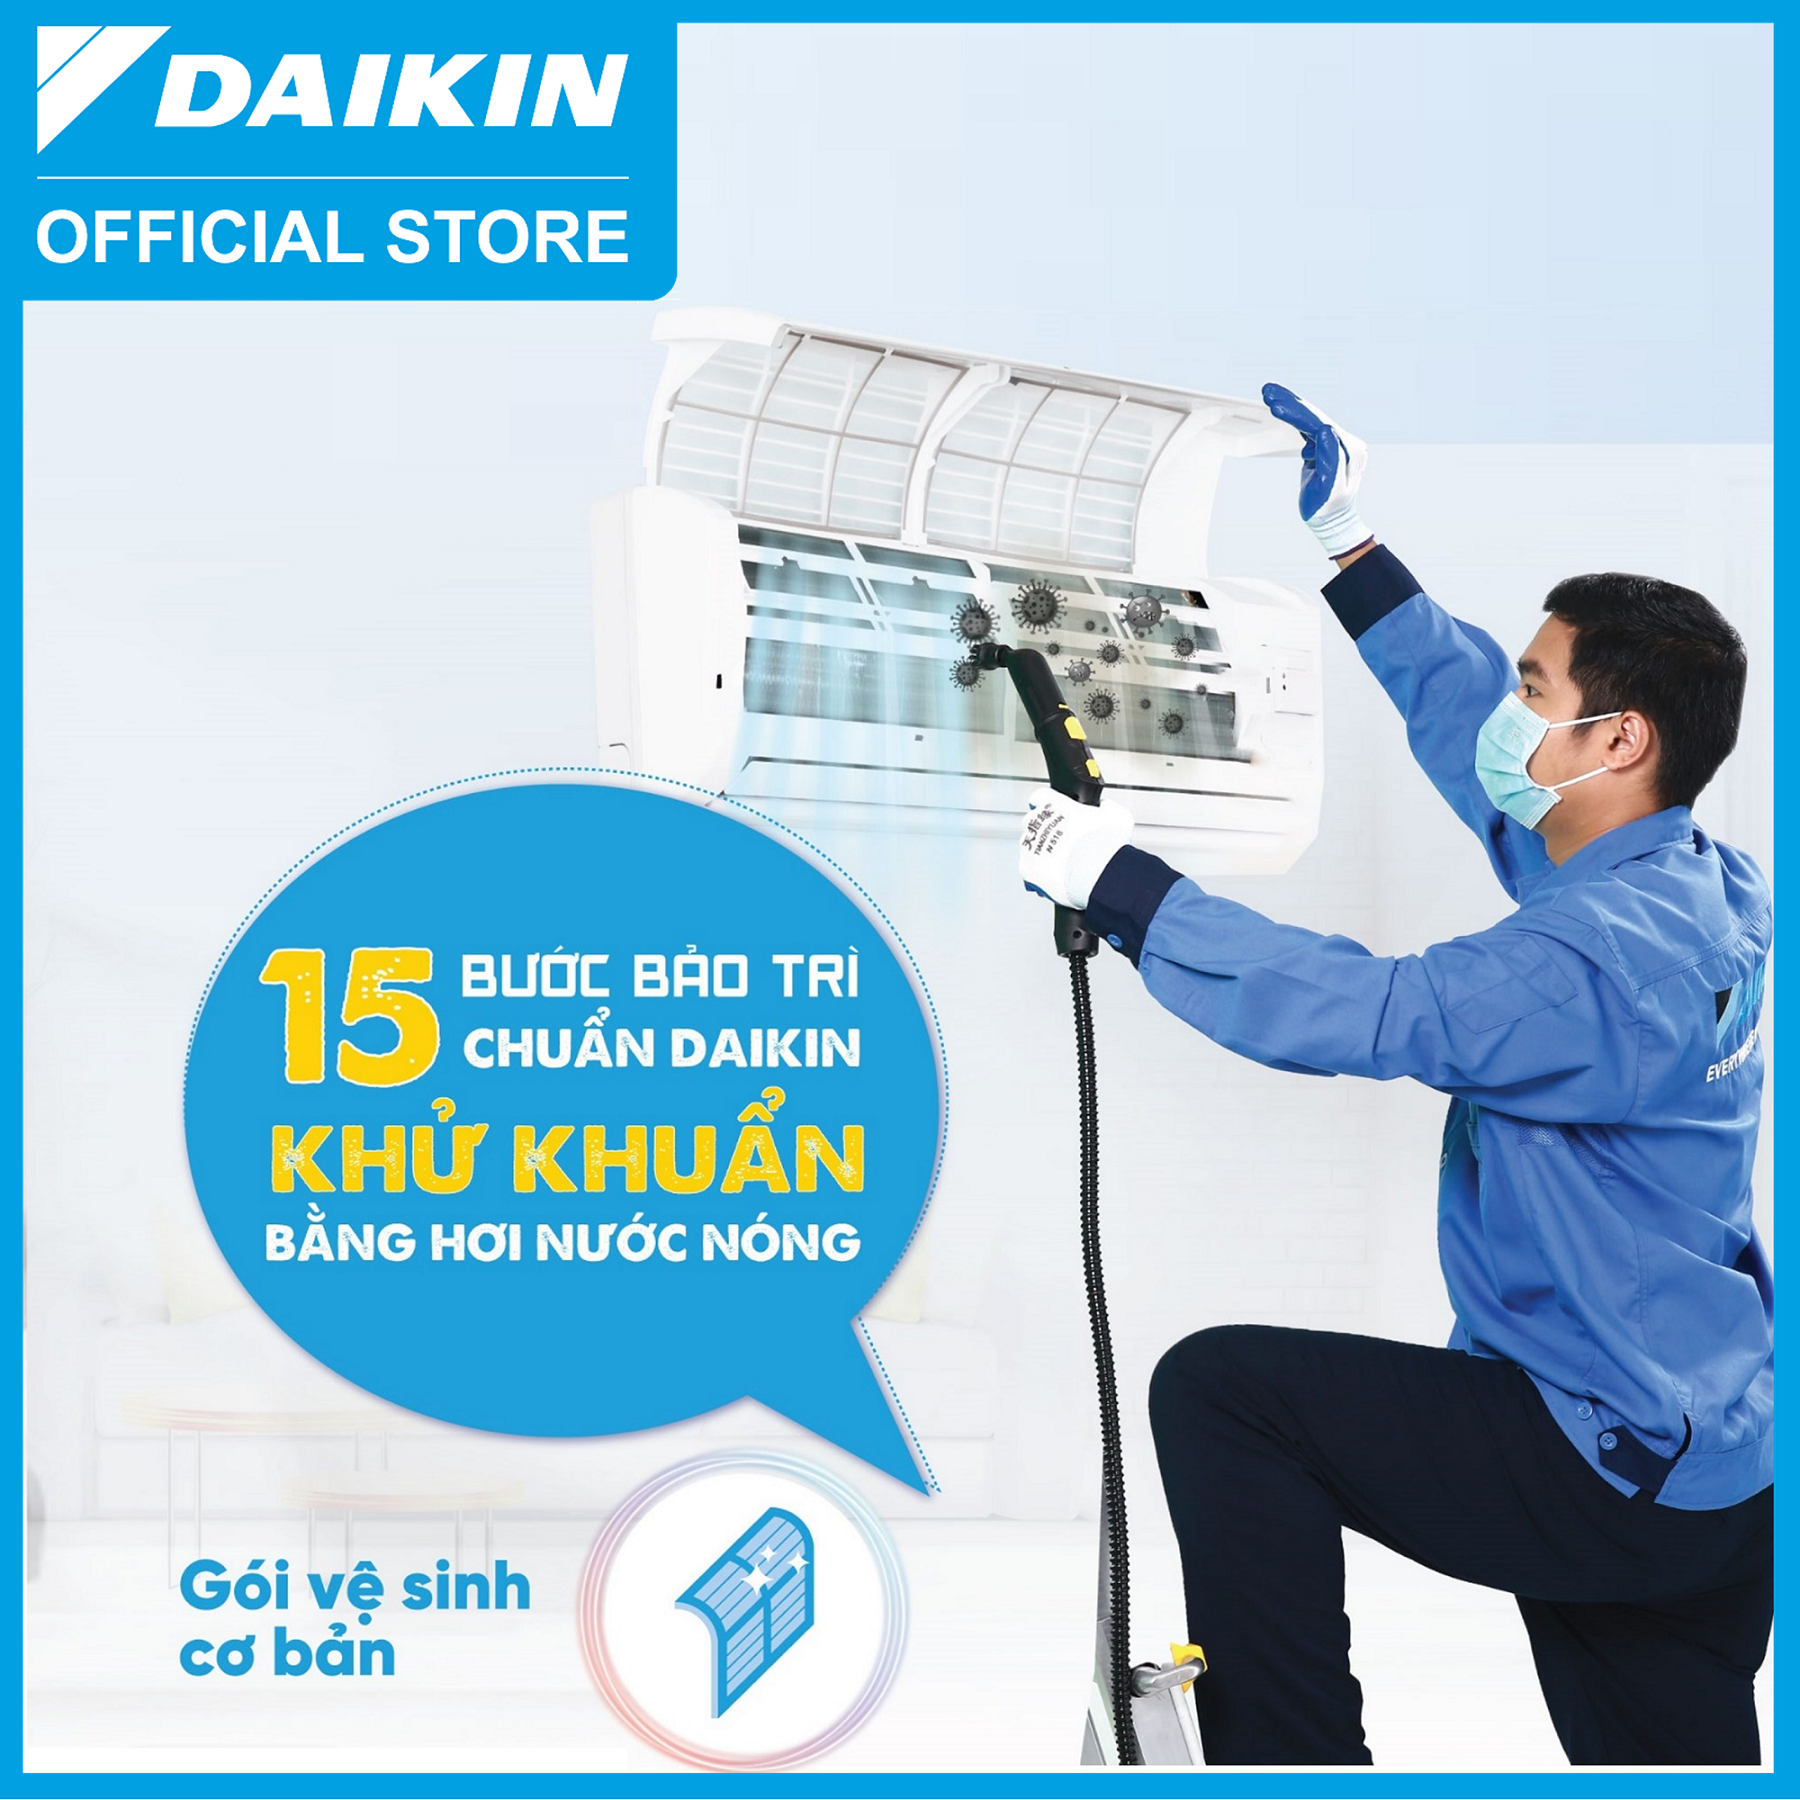 [Áp dụng tất cả các hãng] Daikin - E-voucher dịch vụ bảo trì tiêu chuẩn khử khuẩn bằng hơi nước nóng cho 1 máy điều hòa treo tường (HSD: 31/03/2024)